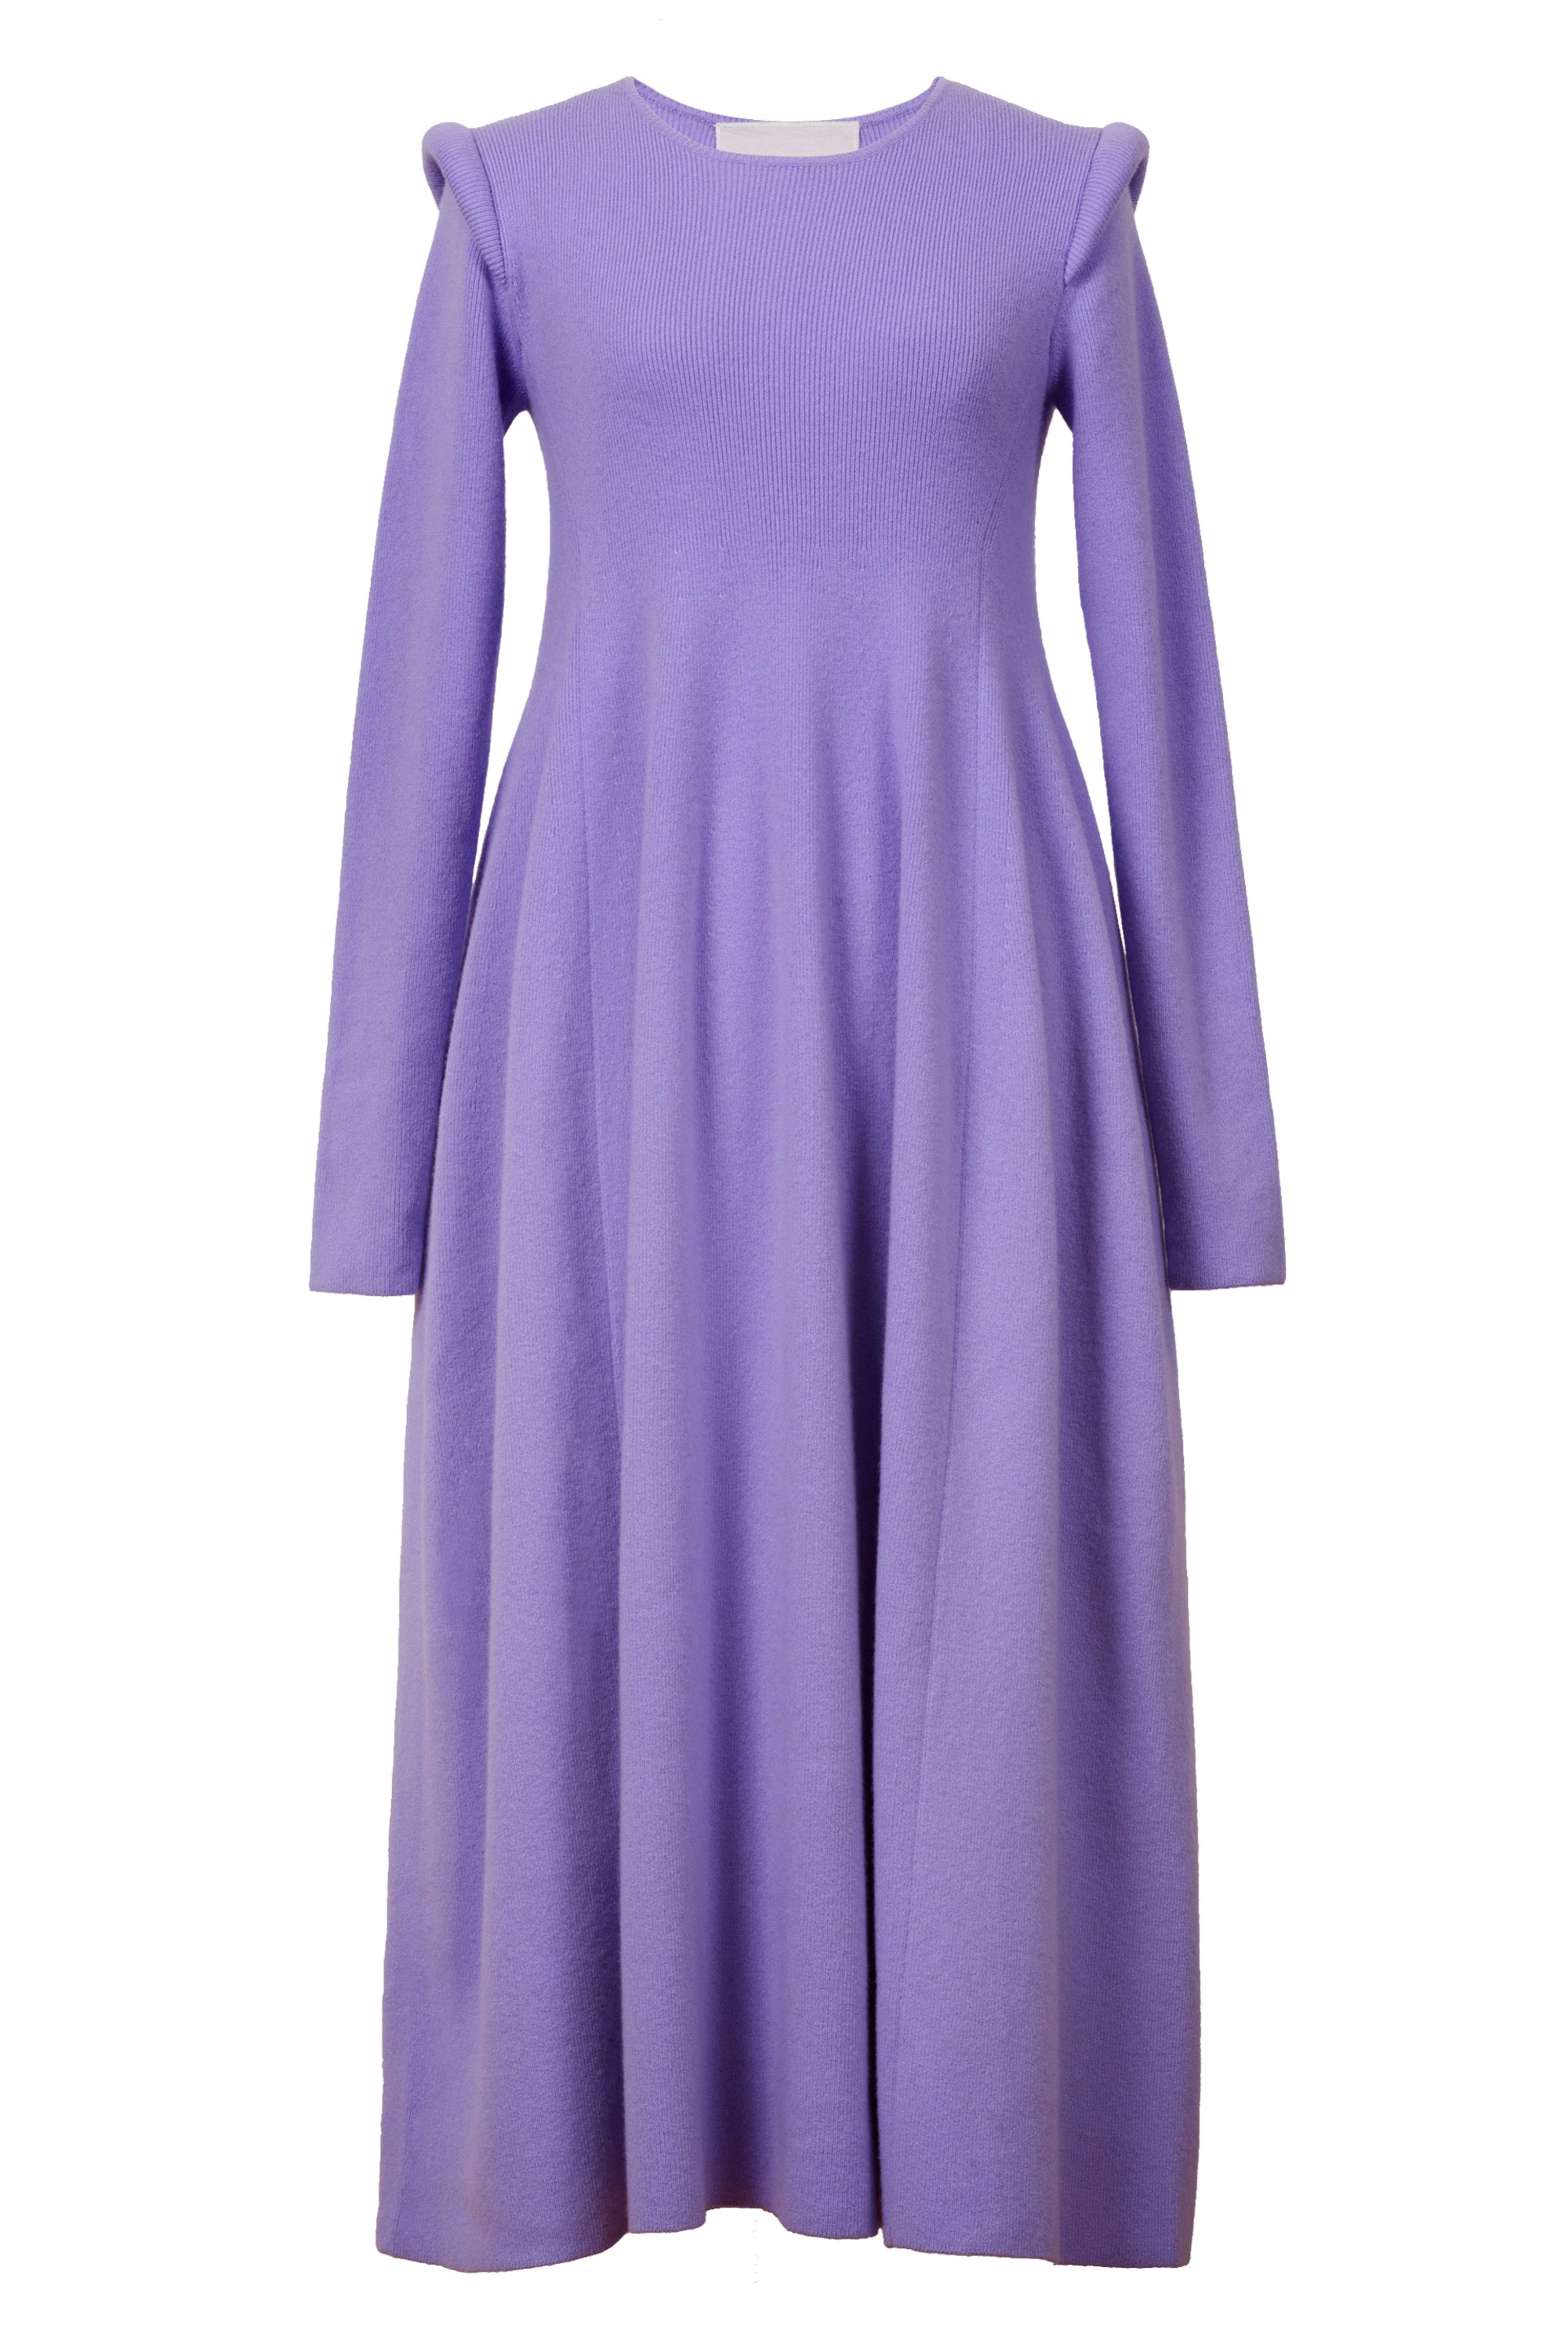 Wool Cashmere Padded Shoulder Dress | Lilac – MYLAN ONLINE SHOP